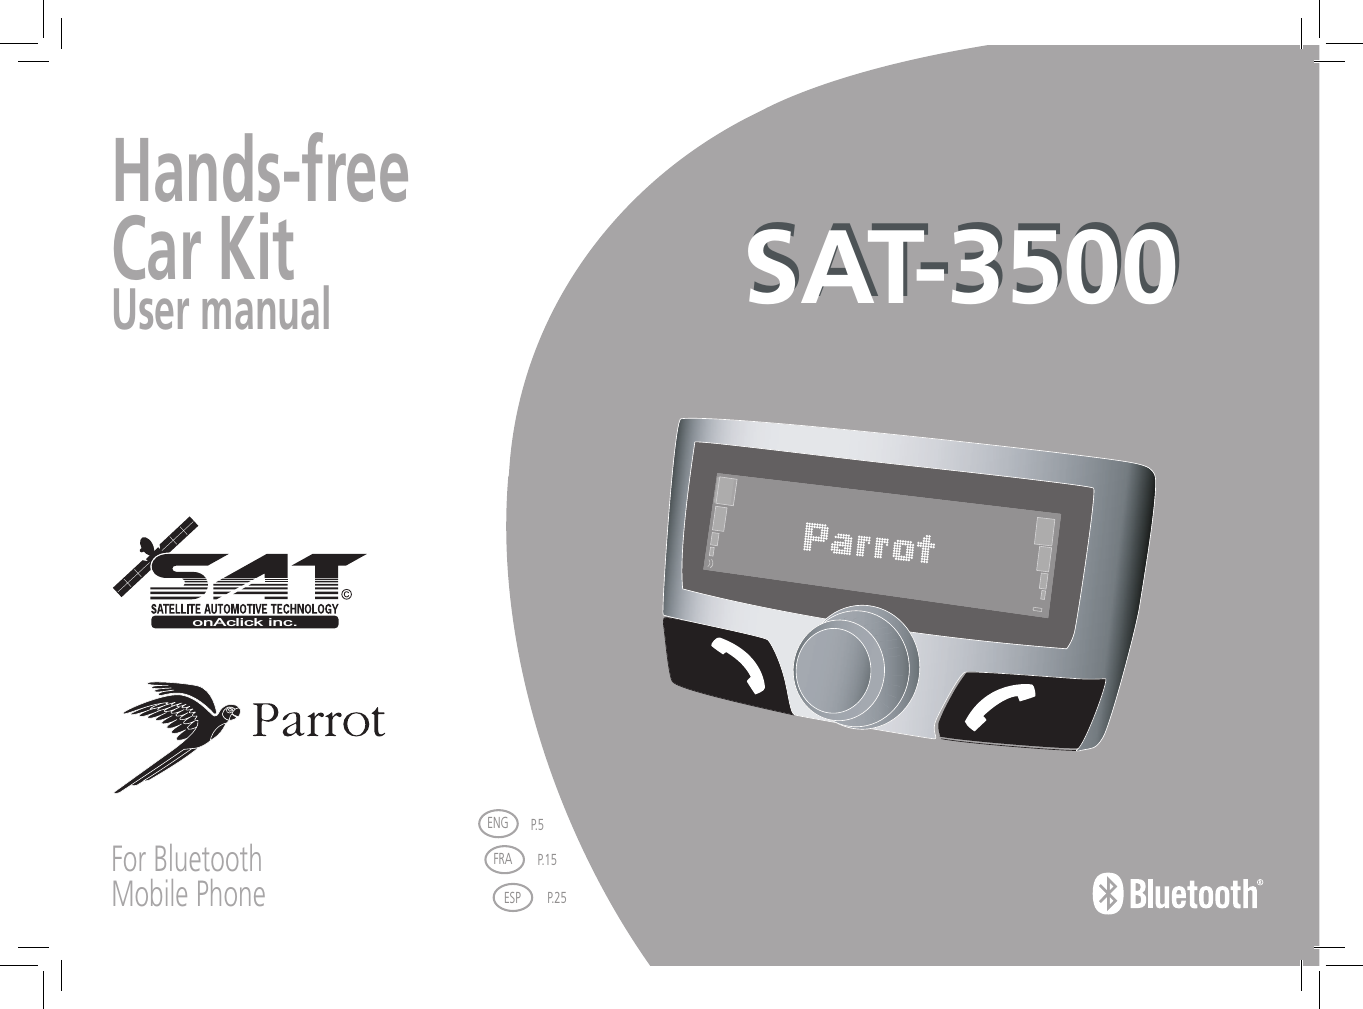 Hands-freeCar KitUser manual For BluetoothMobile PhoneFRAESP P.25ENG P.5P.15onAclick inc.SAT-3500SAT-3500